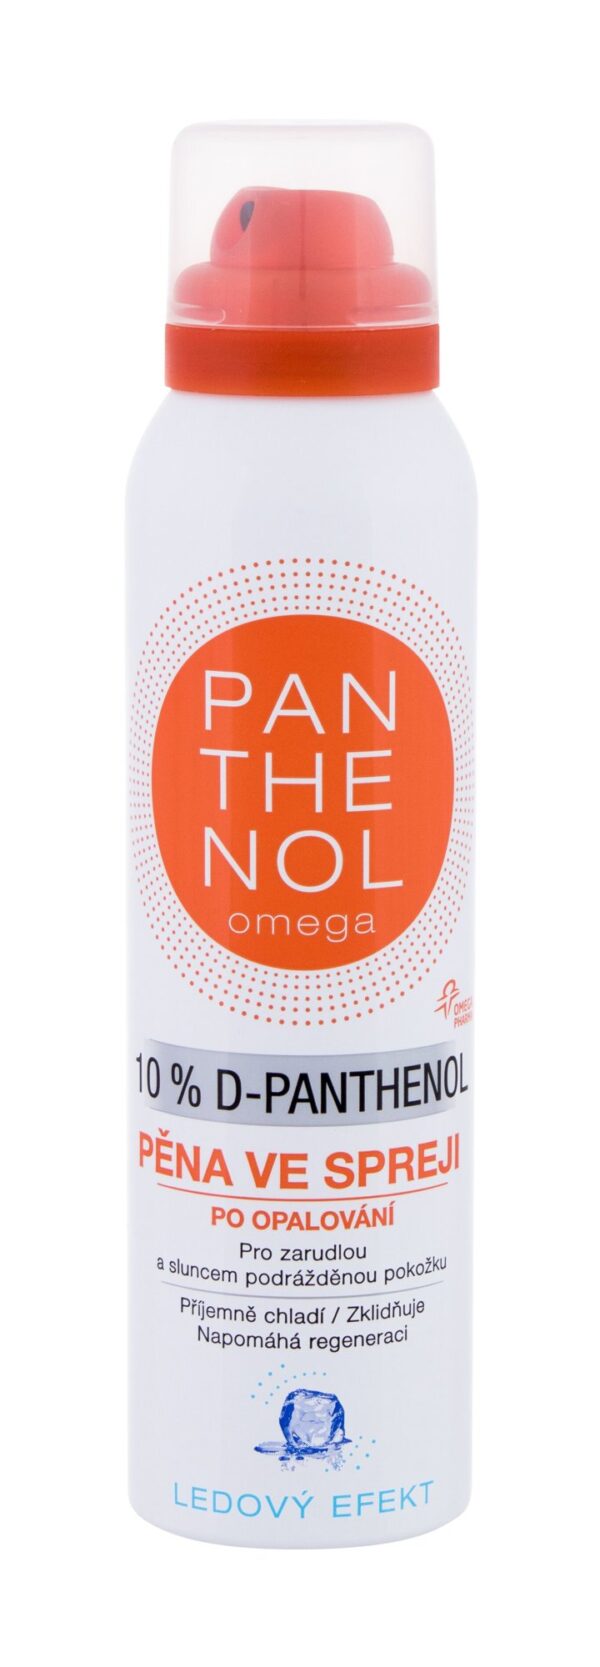 Panthenol Omega 10% D-Panthenol  150 ml U